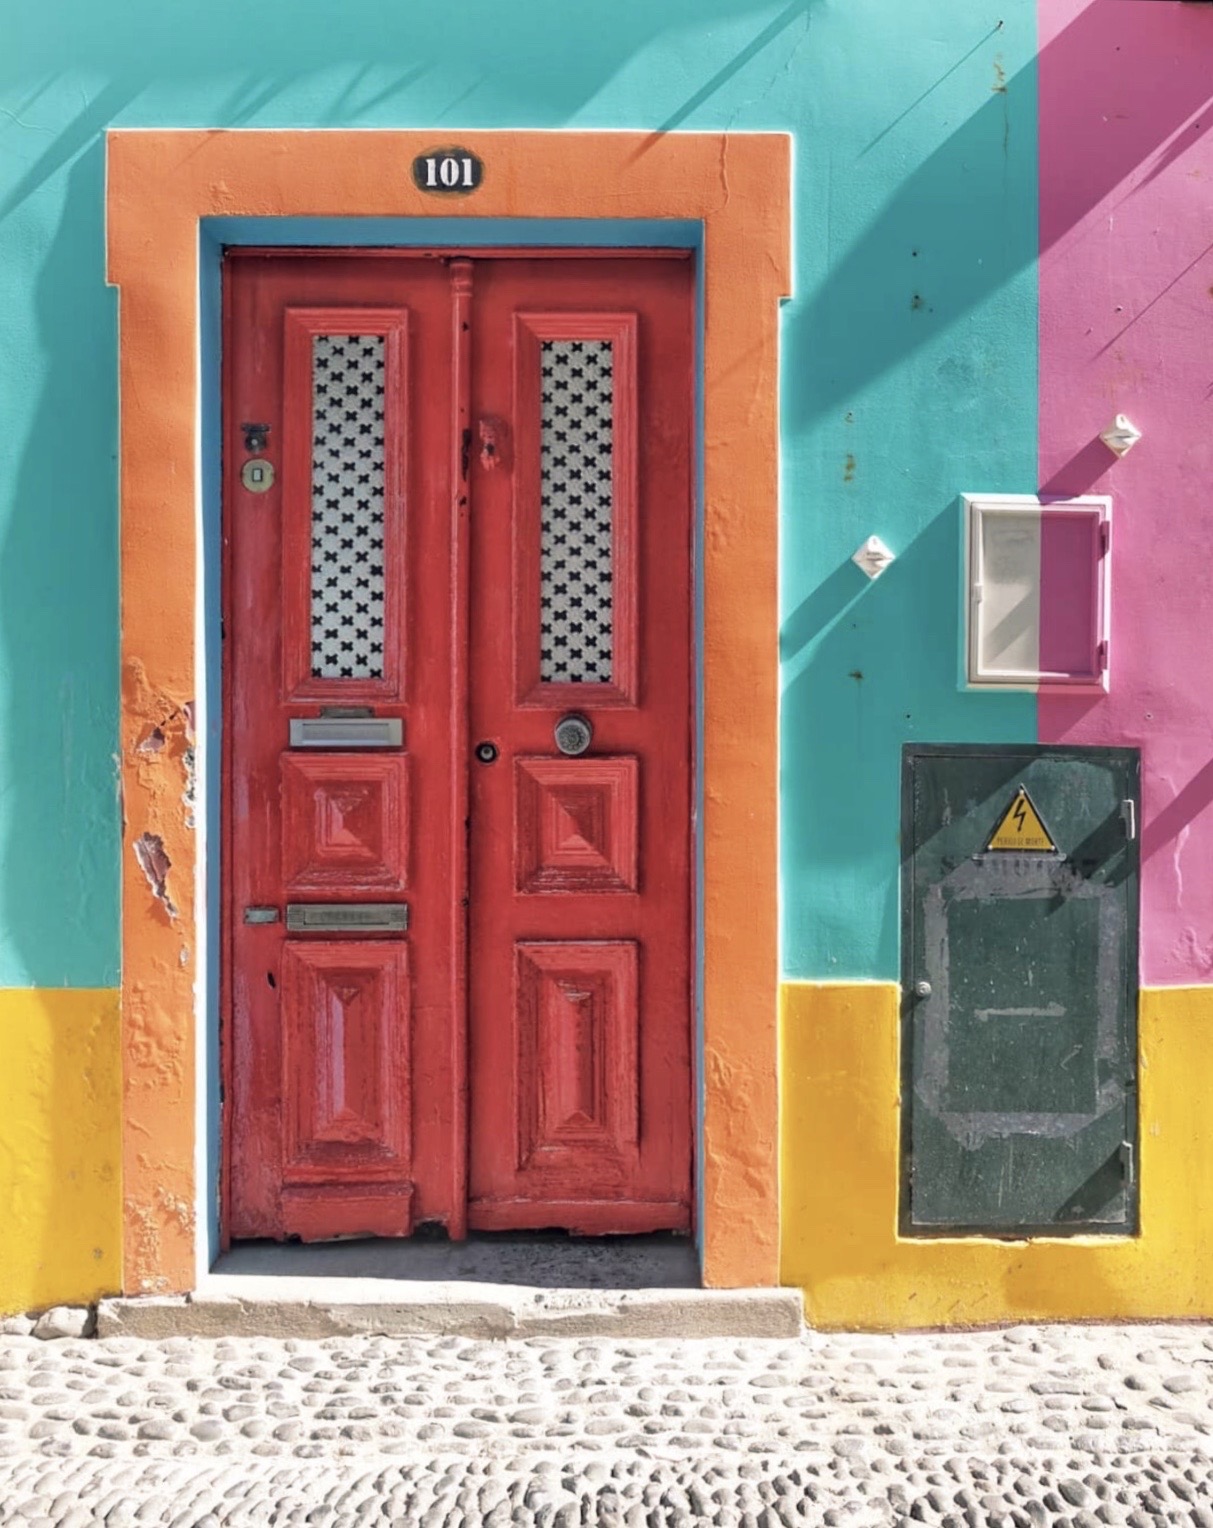 #urbanexploration #house #frontwall #door #doorway #woodendoor #reddoor #colorsofthecity #boldcolor #brightcolors #sunnylightandshadows #stonesidewallk #na